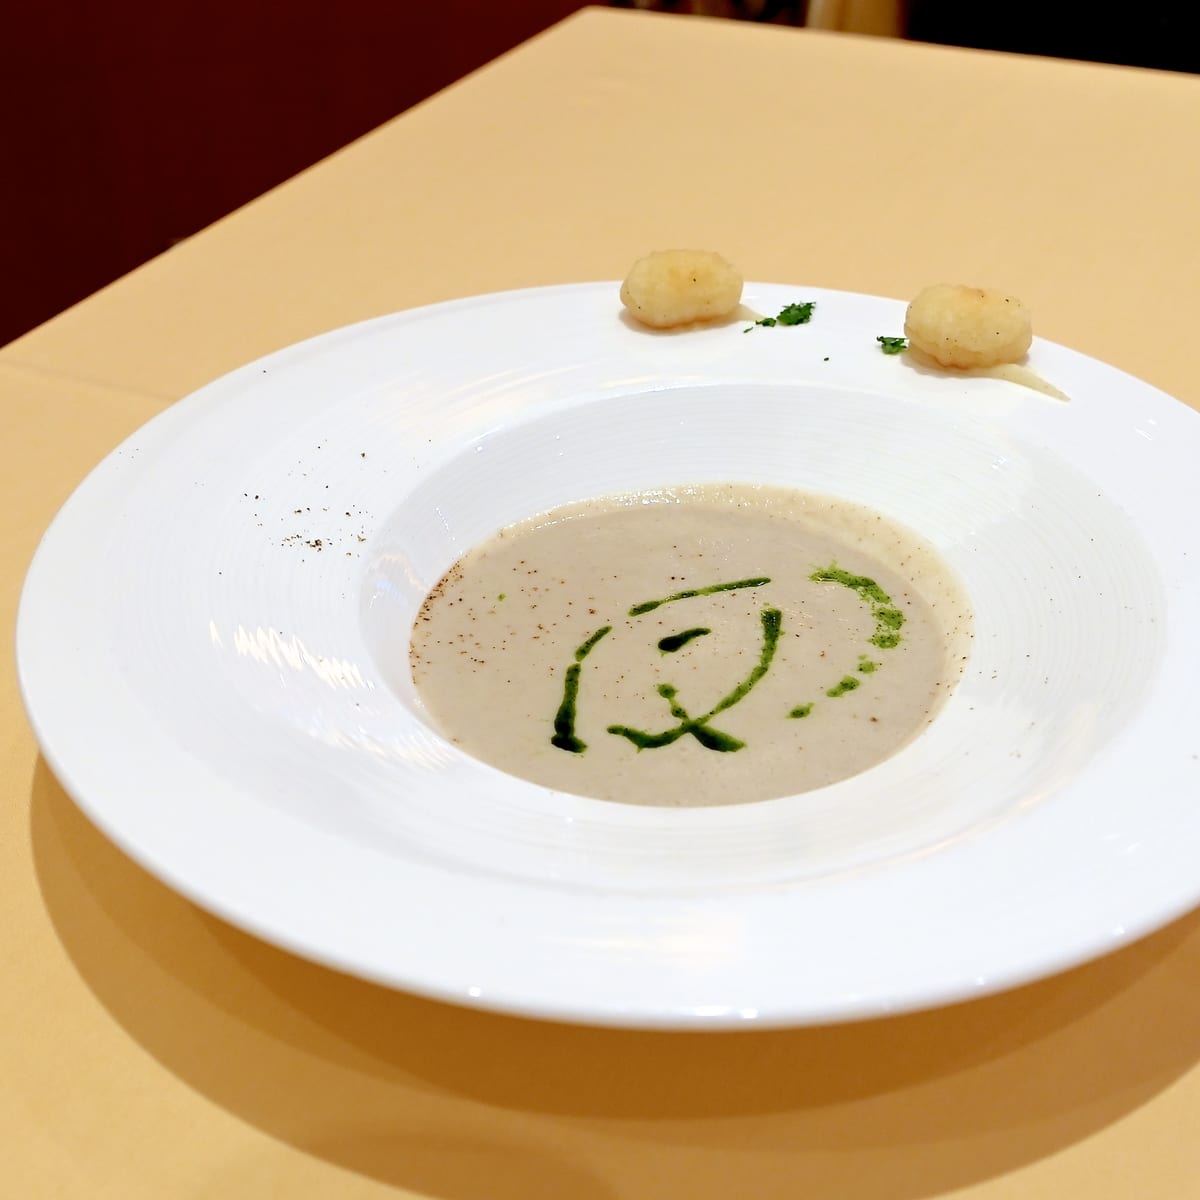 菊芋のスープ パセリのアクセント ニョッキのフライとともに